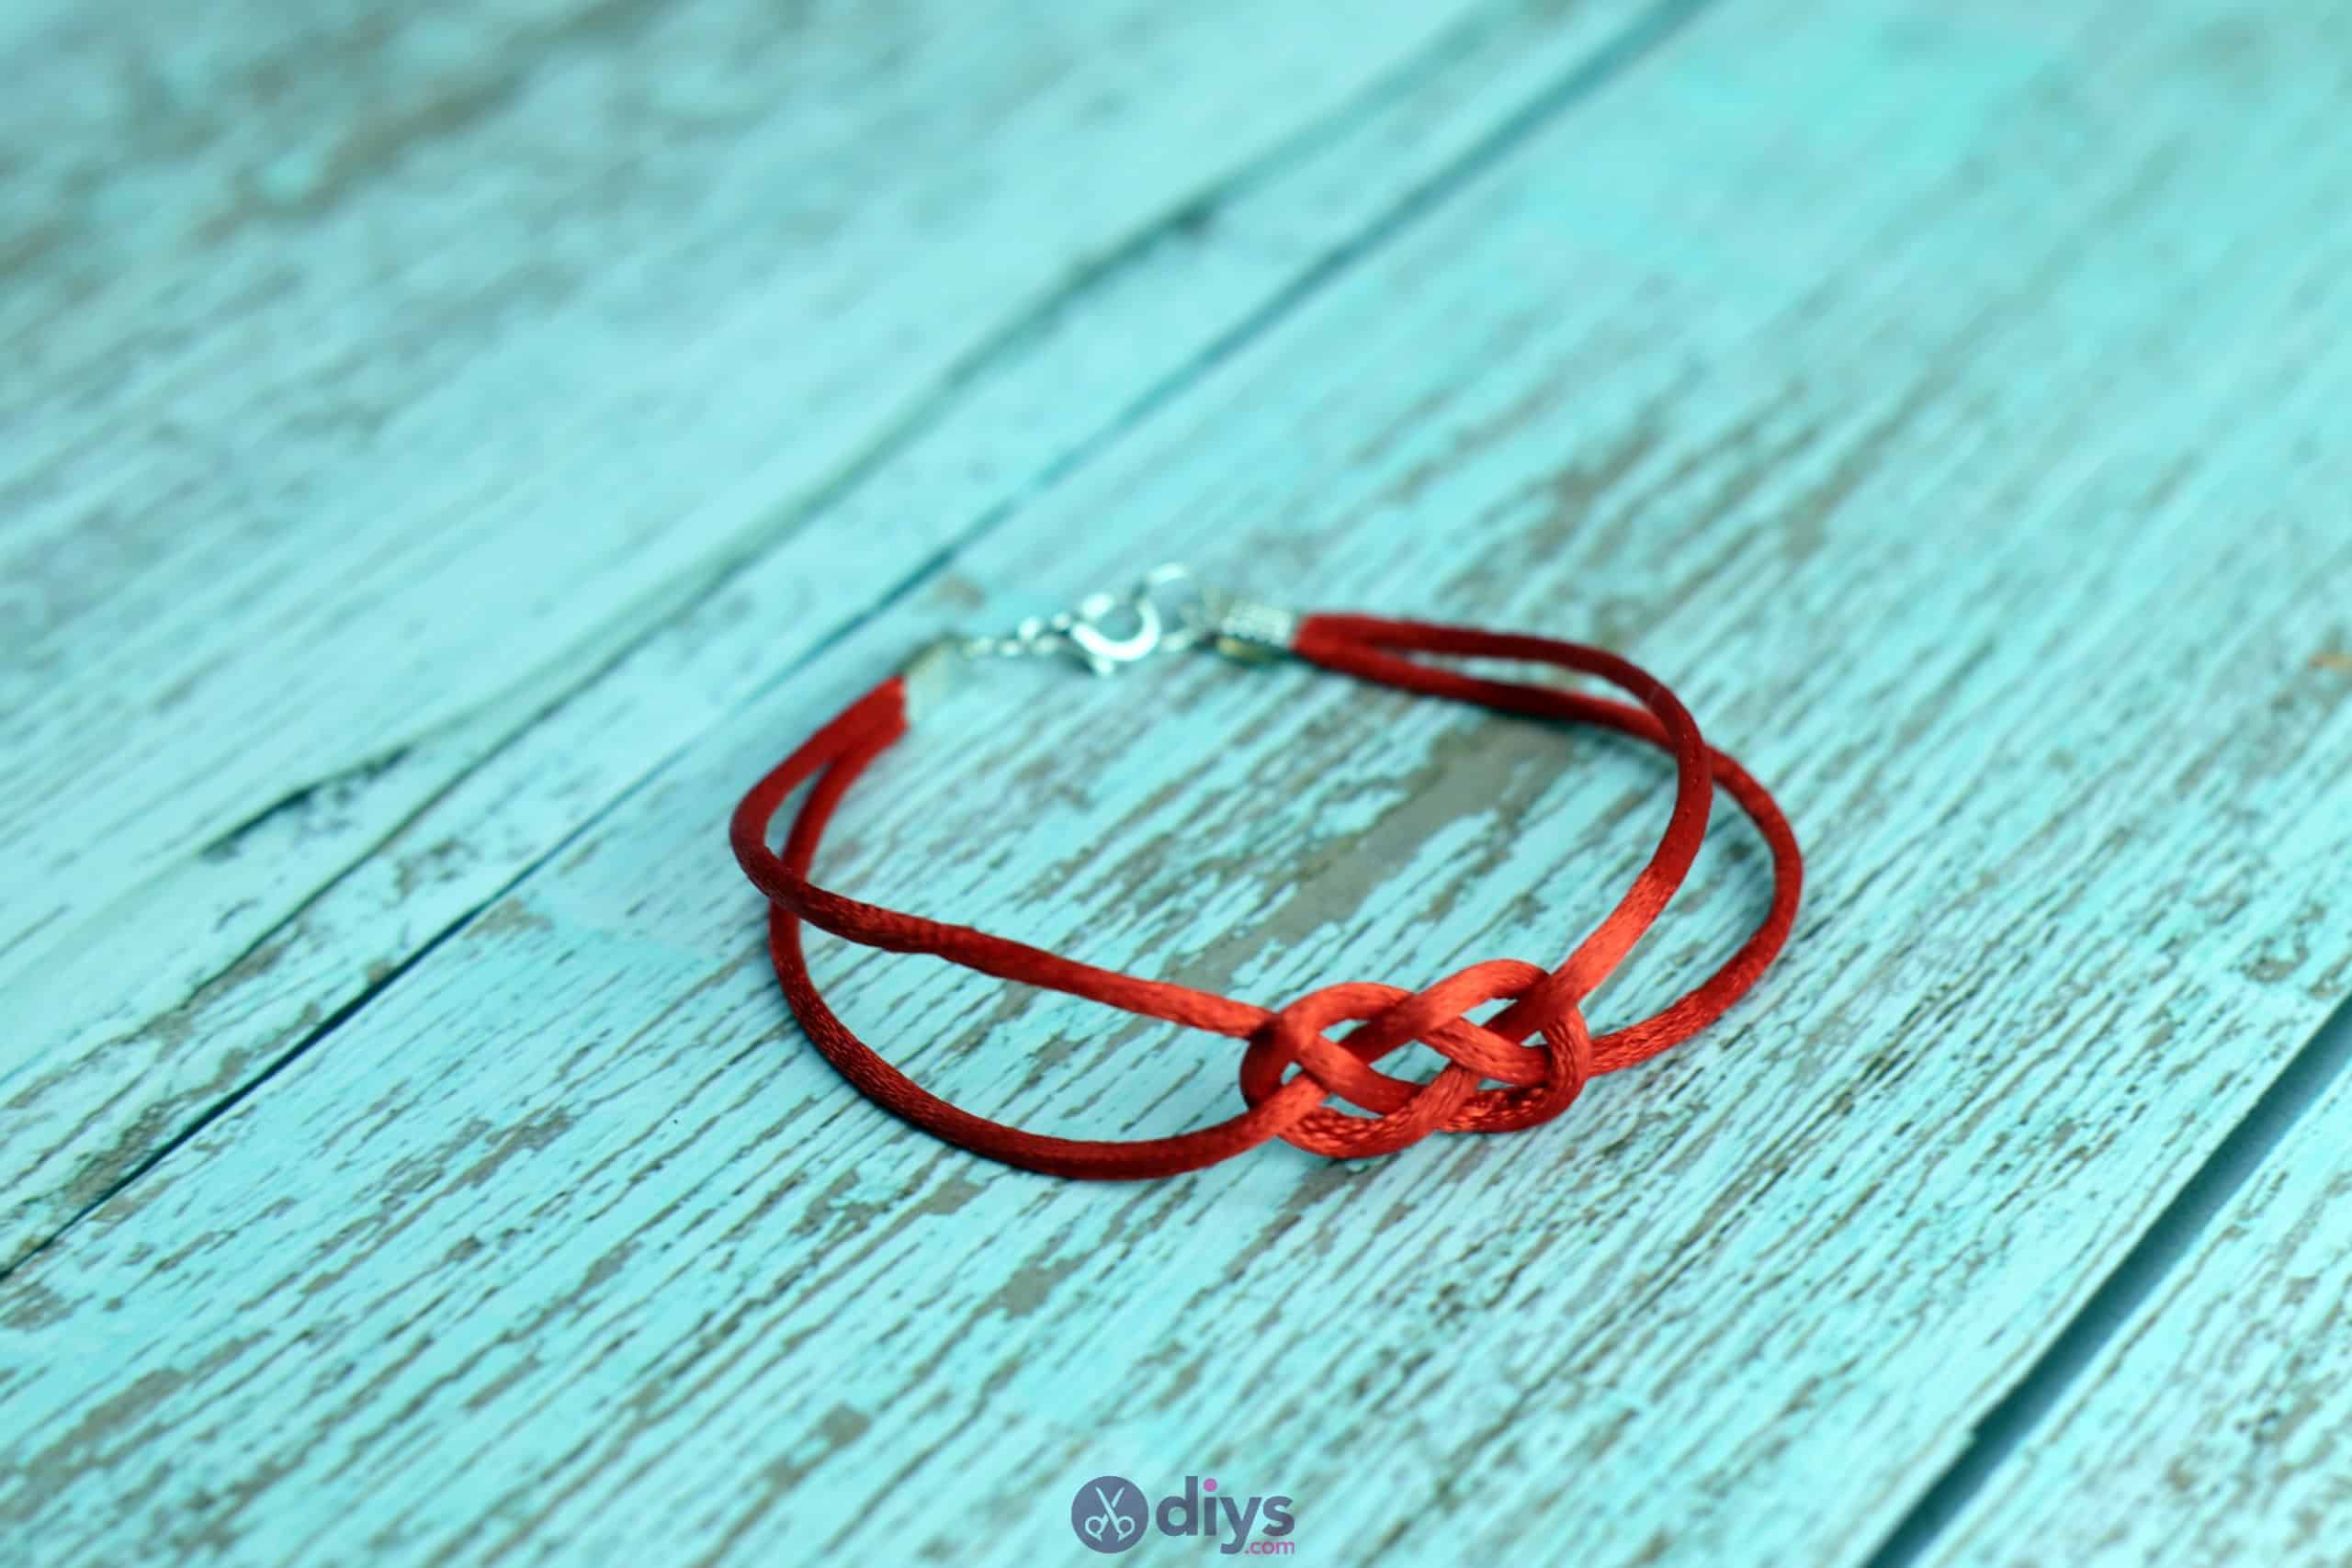 Diy knotted bracelet red string